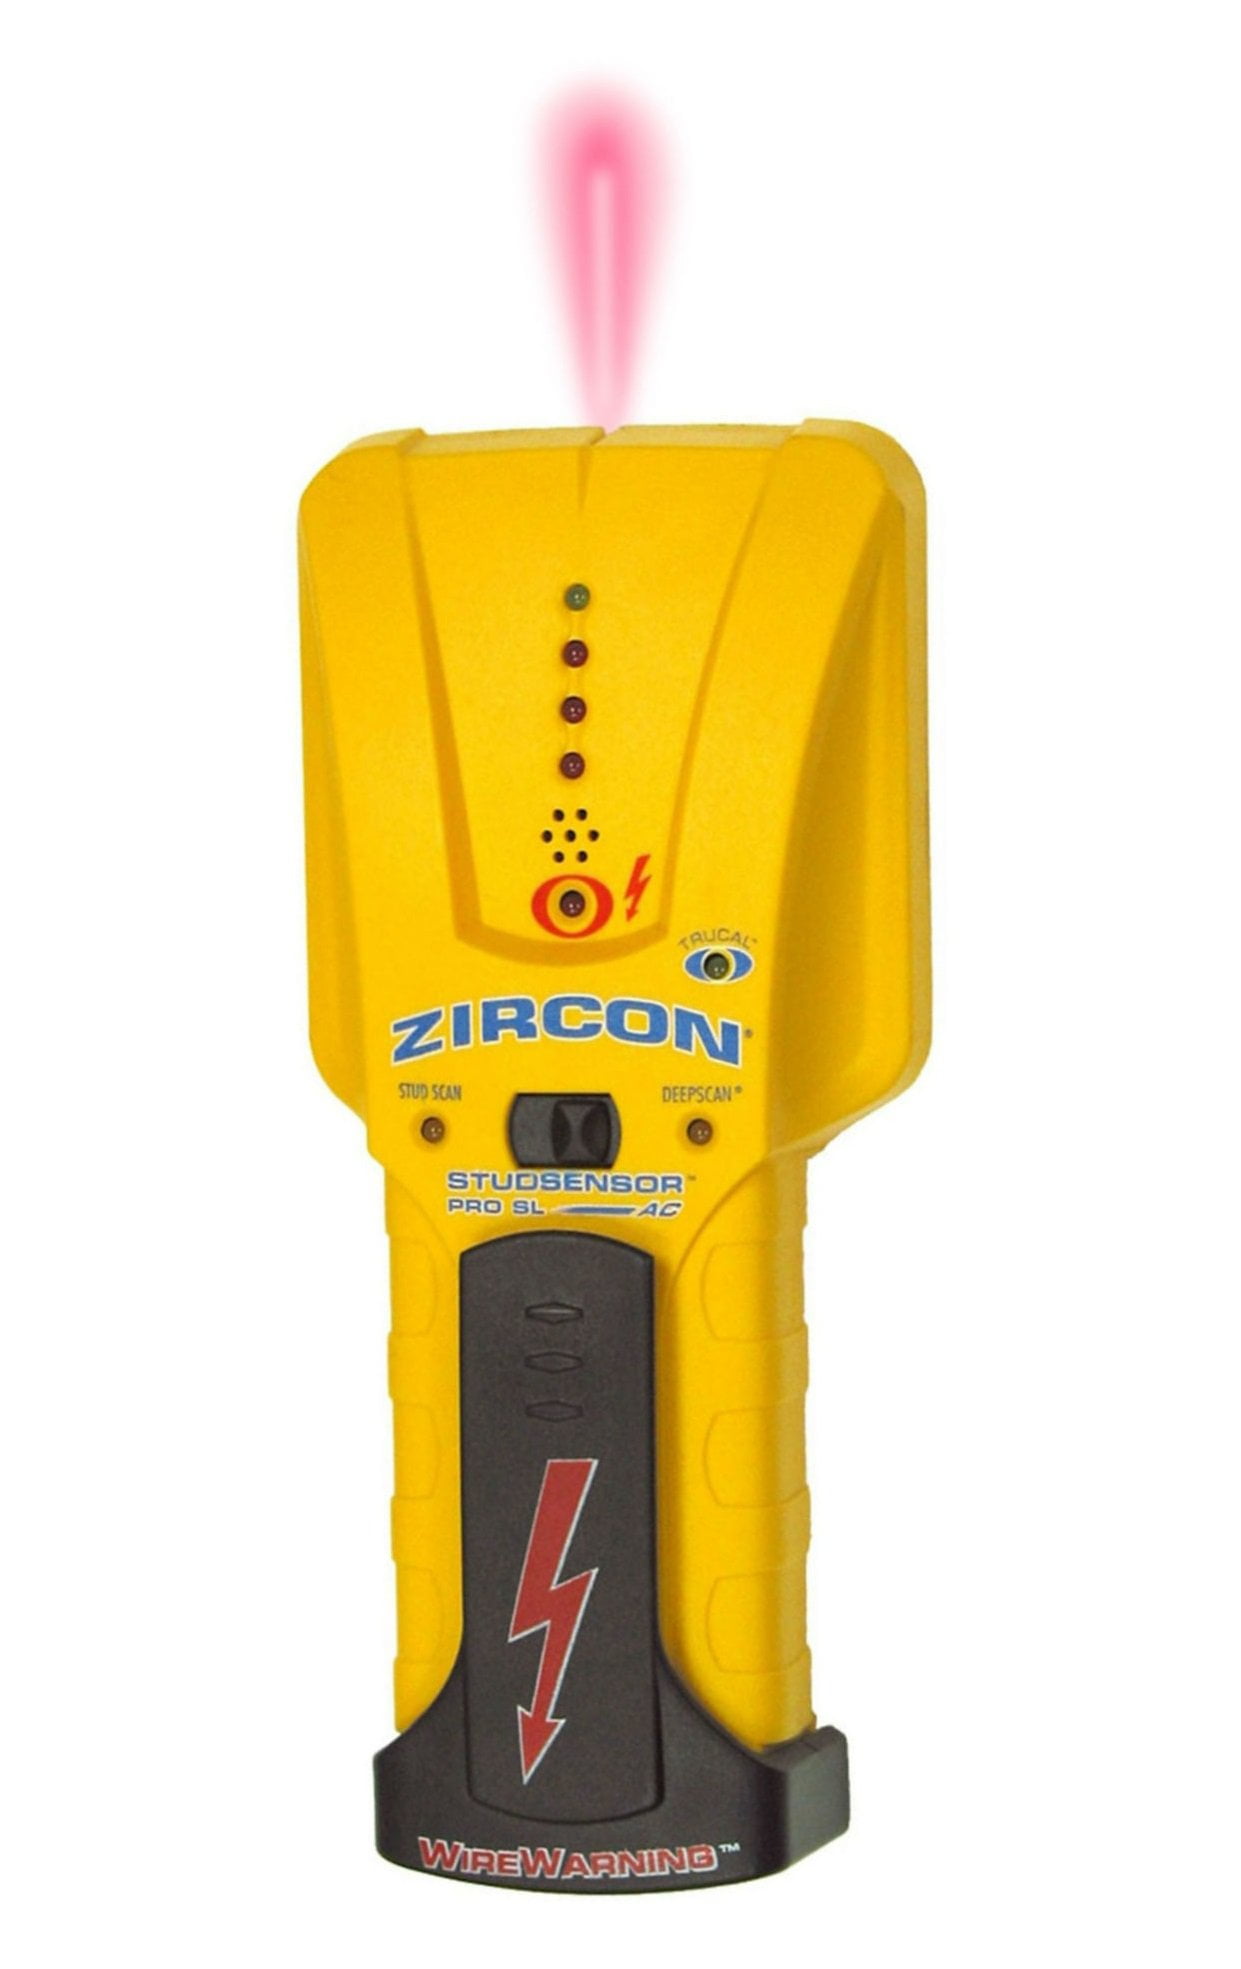 New ZIRCON Stud Sensor SL Stud Finder with Light . Find Wood & Metal Stud Edges